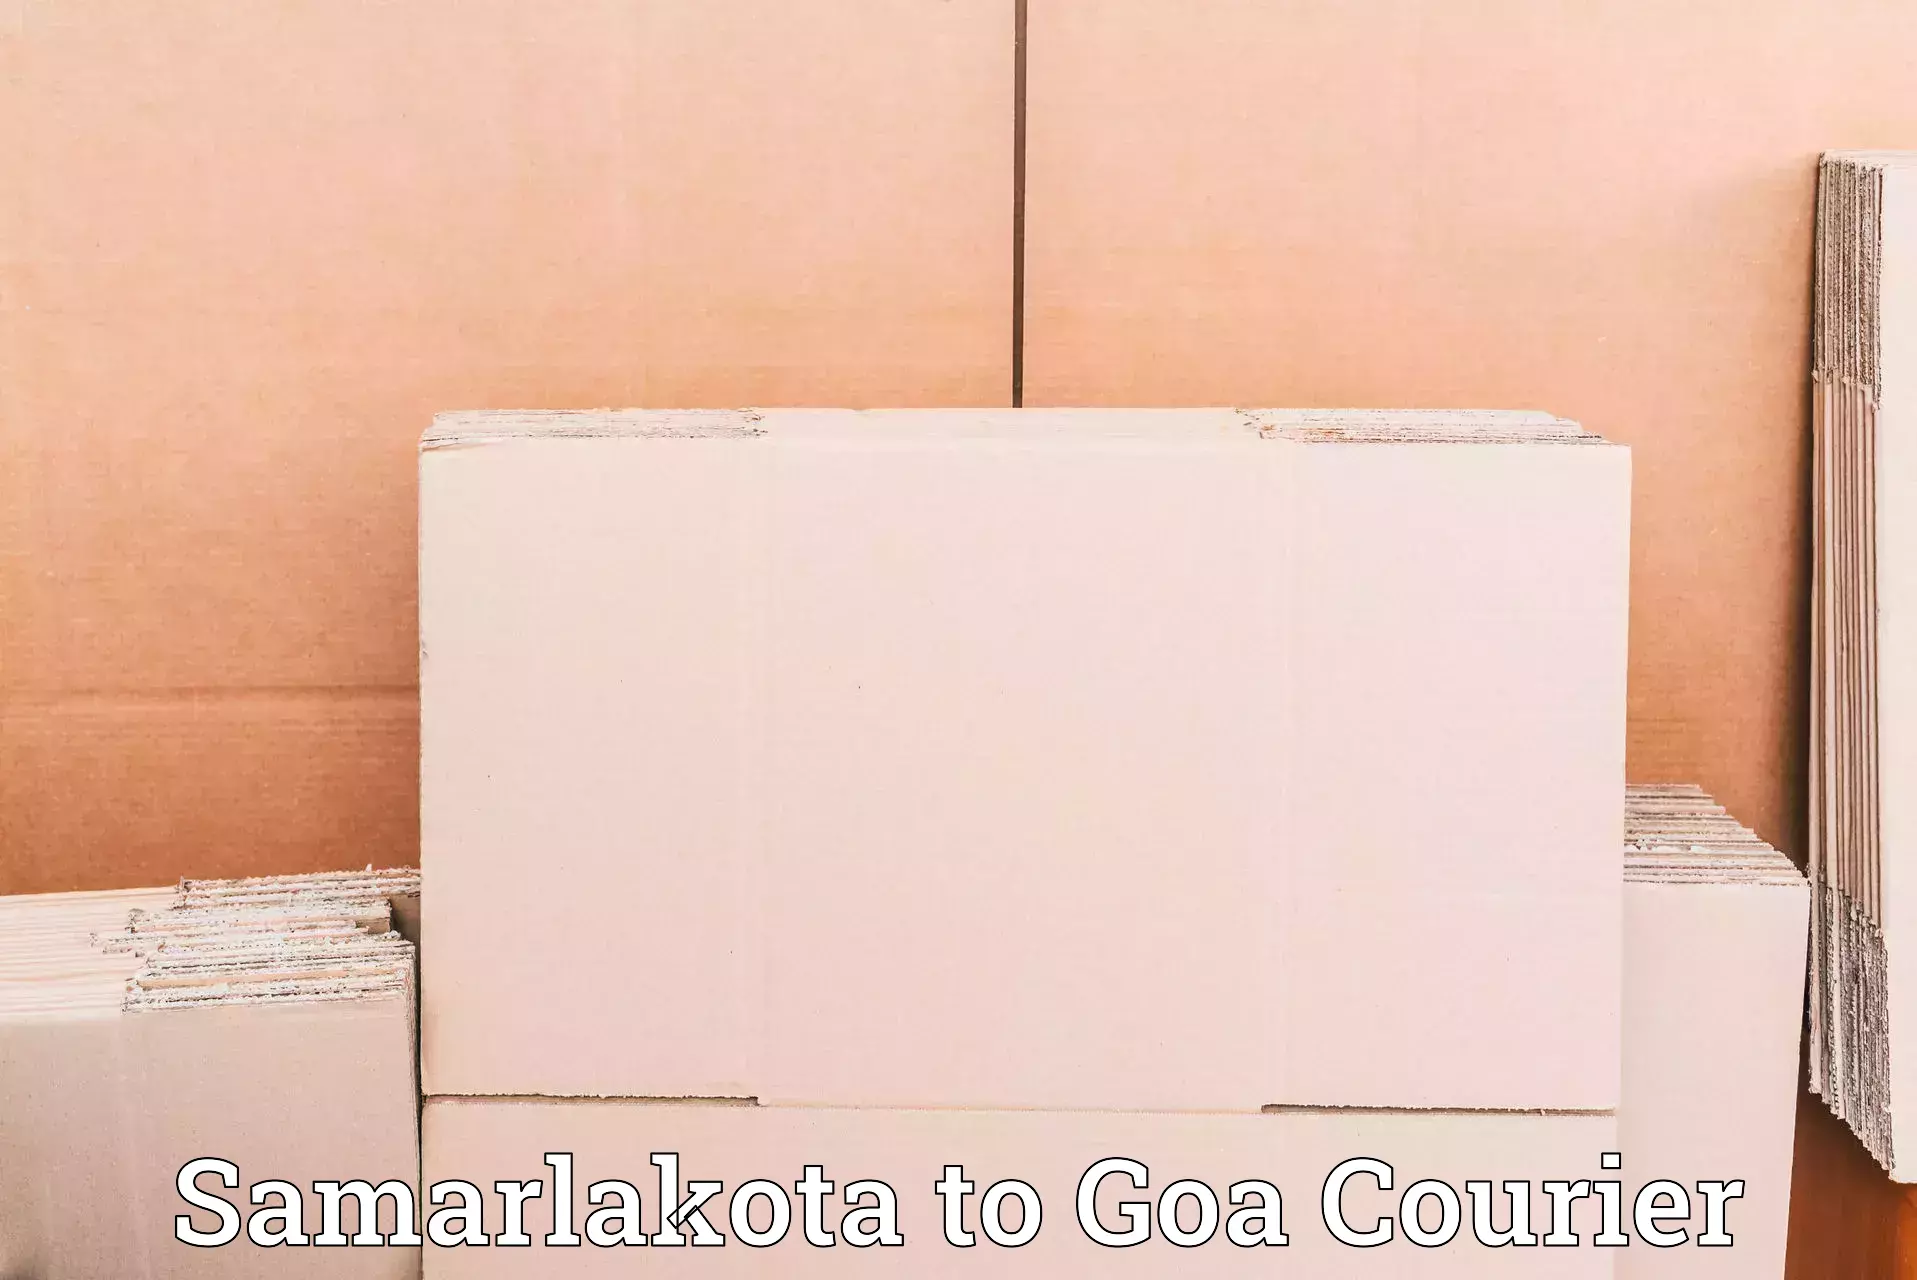 Courier service partnerships Samarlakota to Vasco da Gama